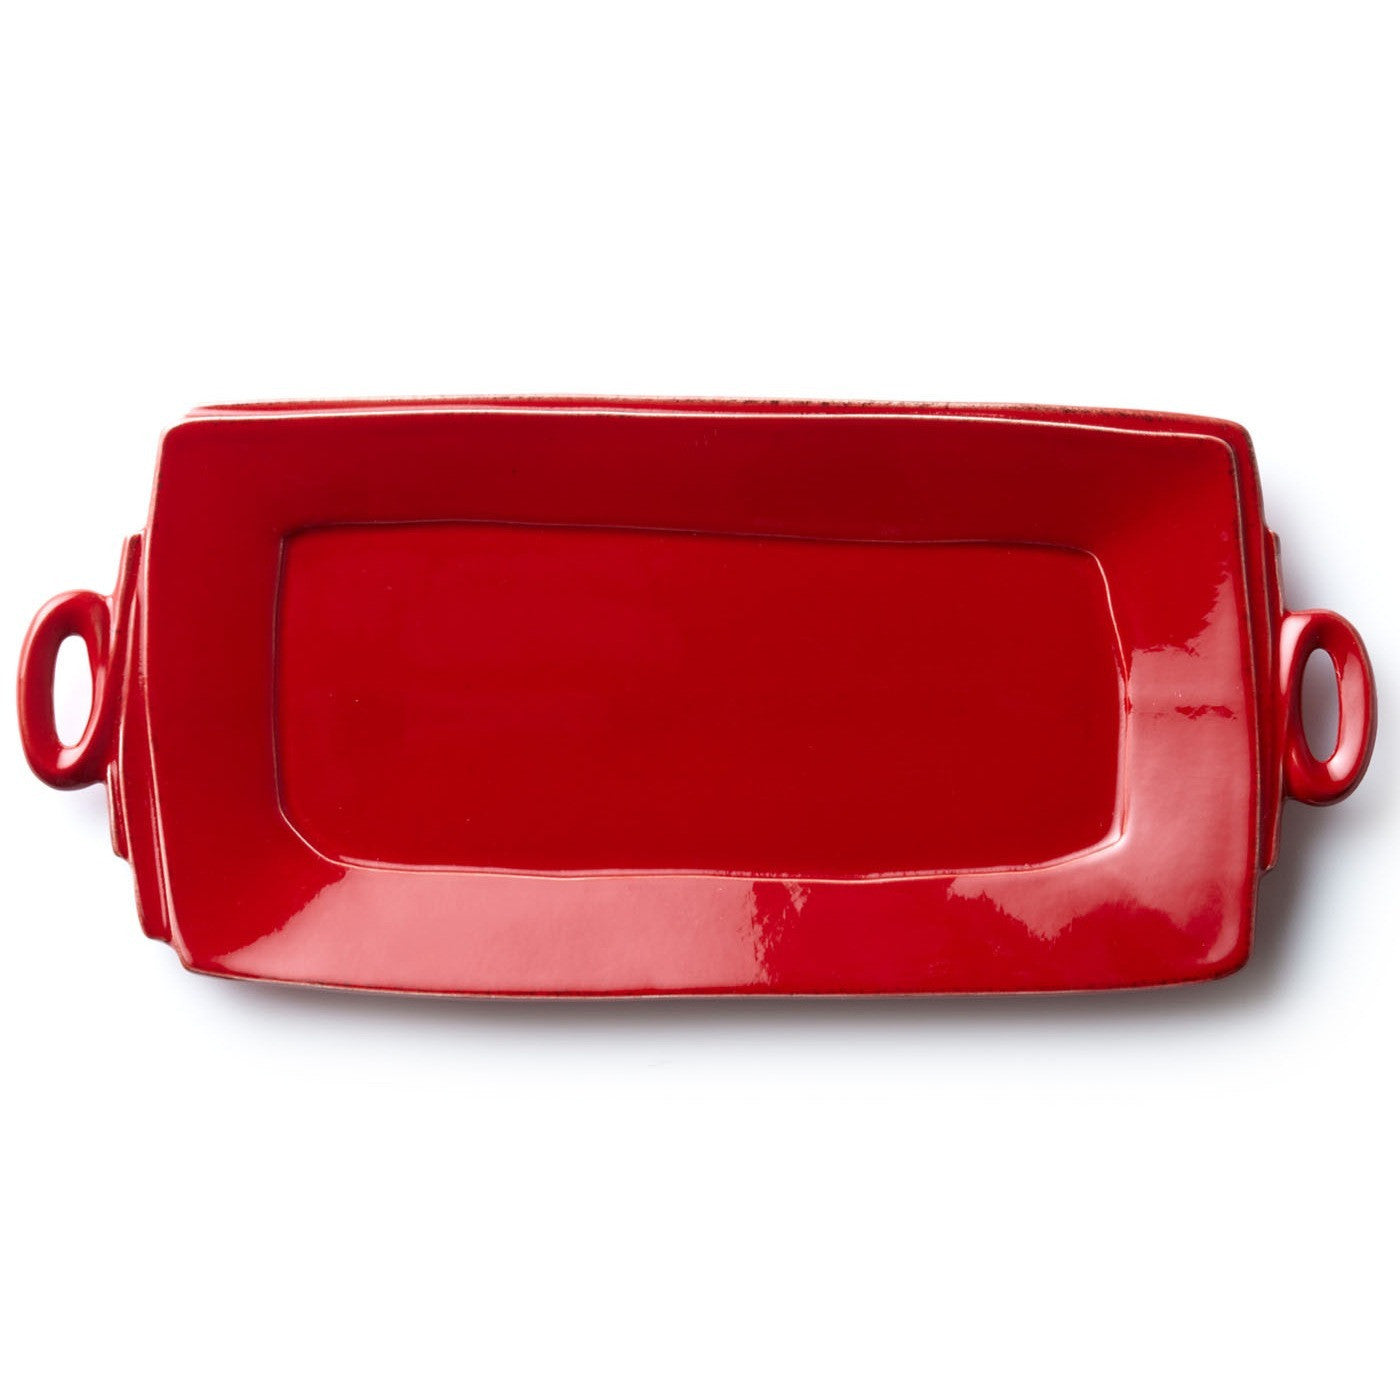 VIETRI: Lastra Red Handled Rectangular Platter - Artistica.com